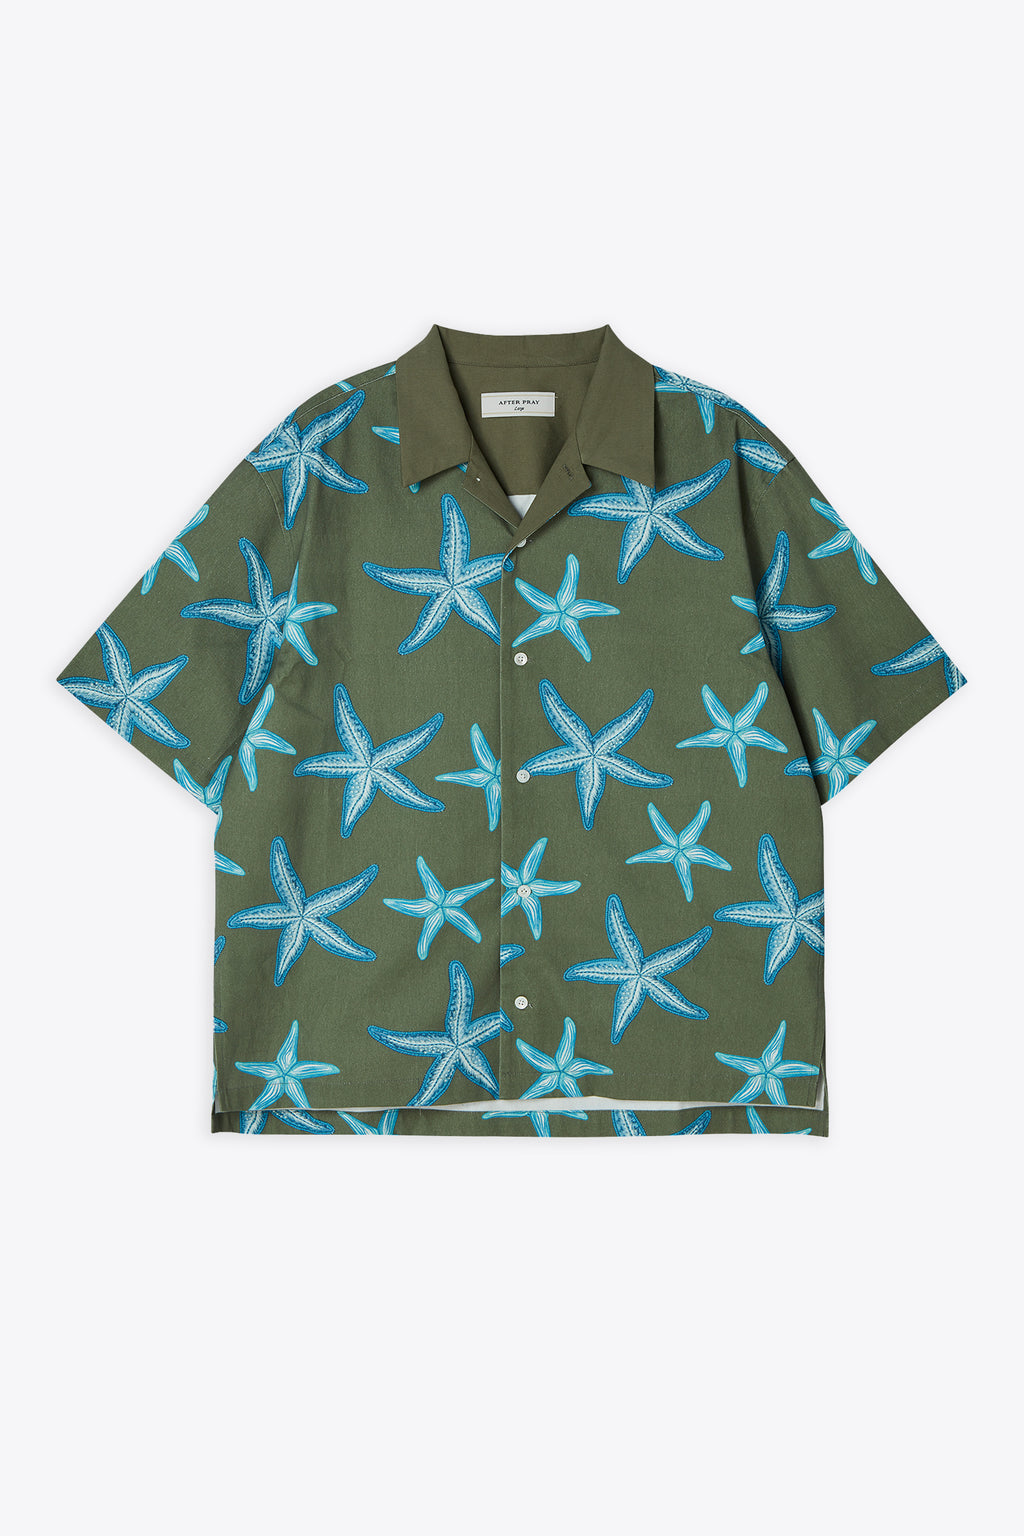 alt-image__Camicia-a-maniche-corte-in-cotone-verde-militare-con-stelle-marine---Starfish-Open-Collar-Half-Shirt